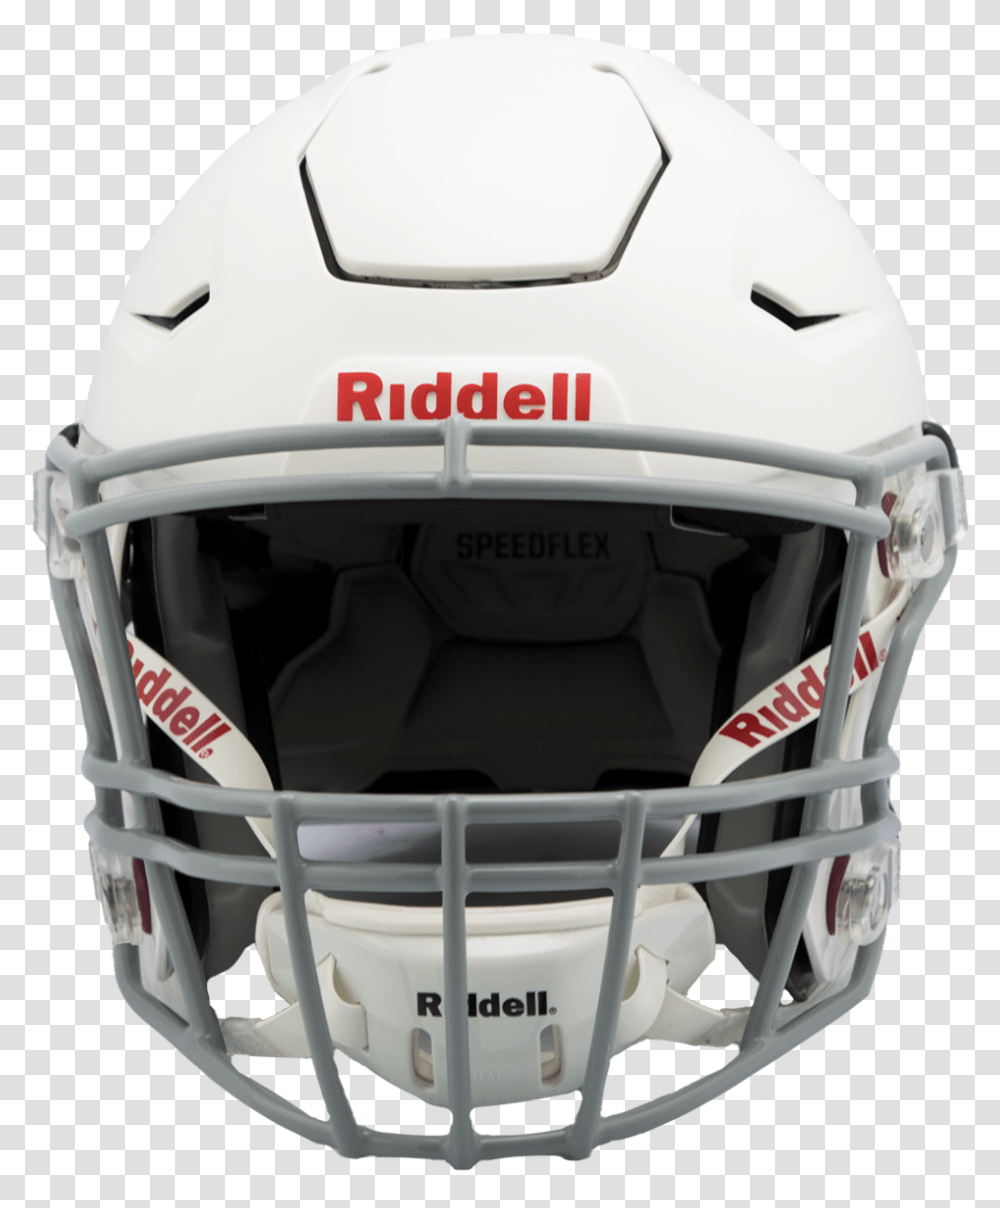 Riddell Speedflex Youth Football Helmet Revolution Helmets, Clothing, Apparel, Sport, Sports Transparent Png